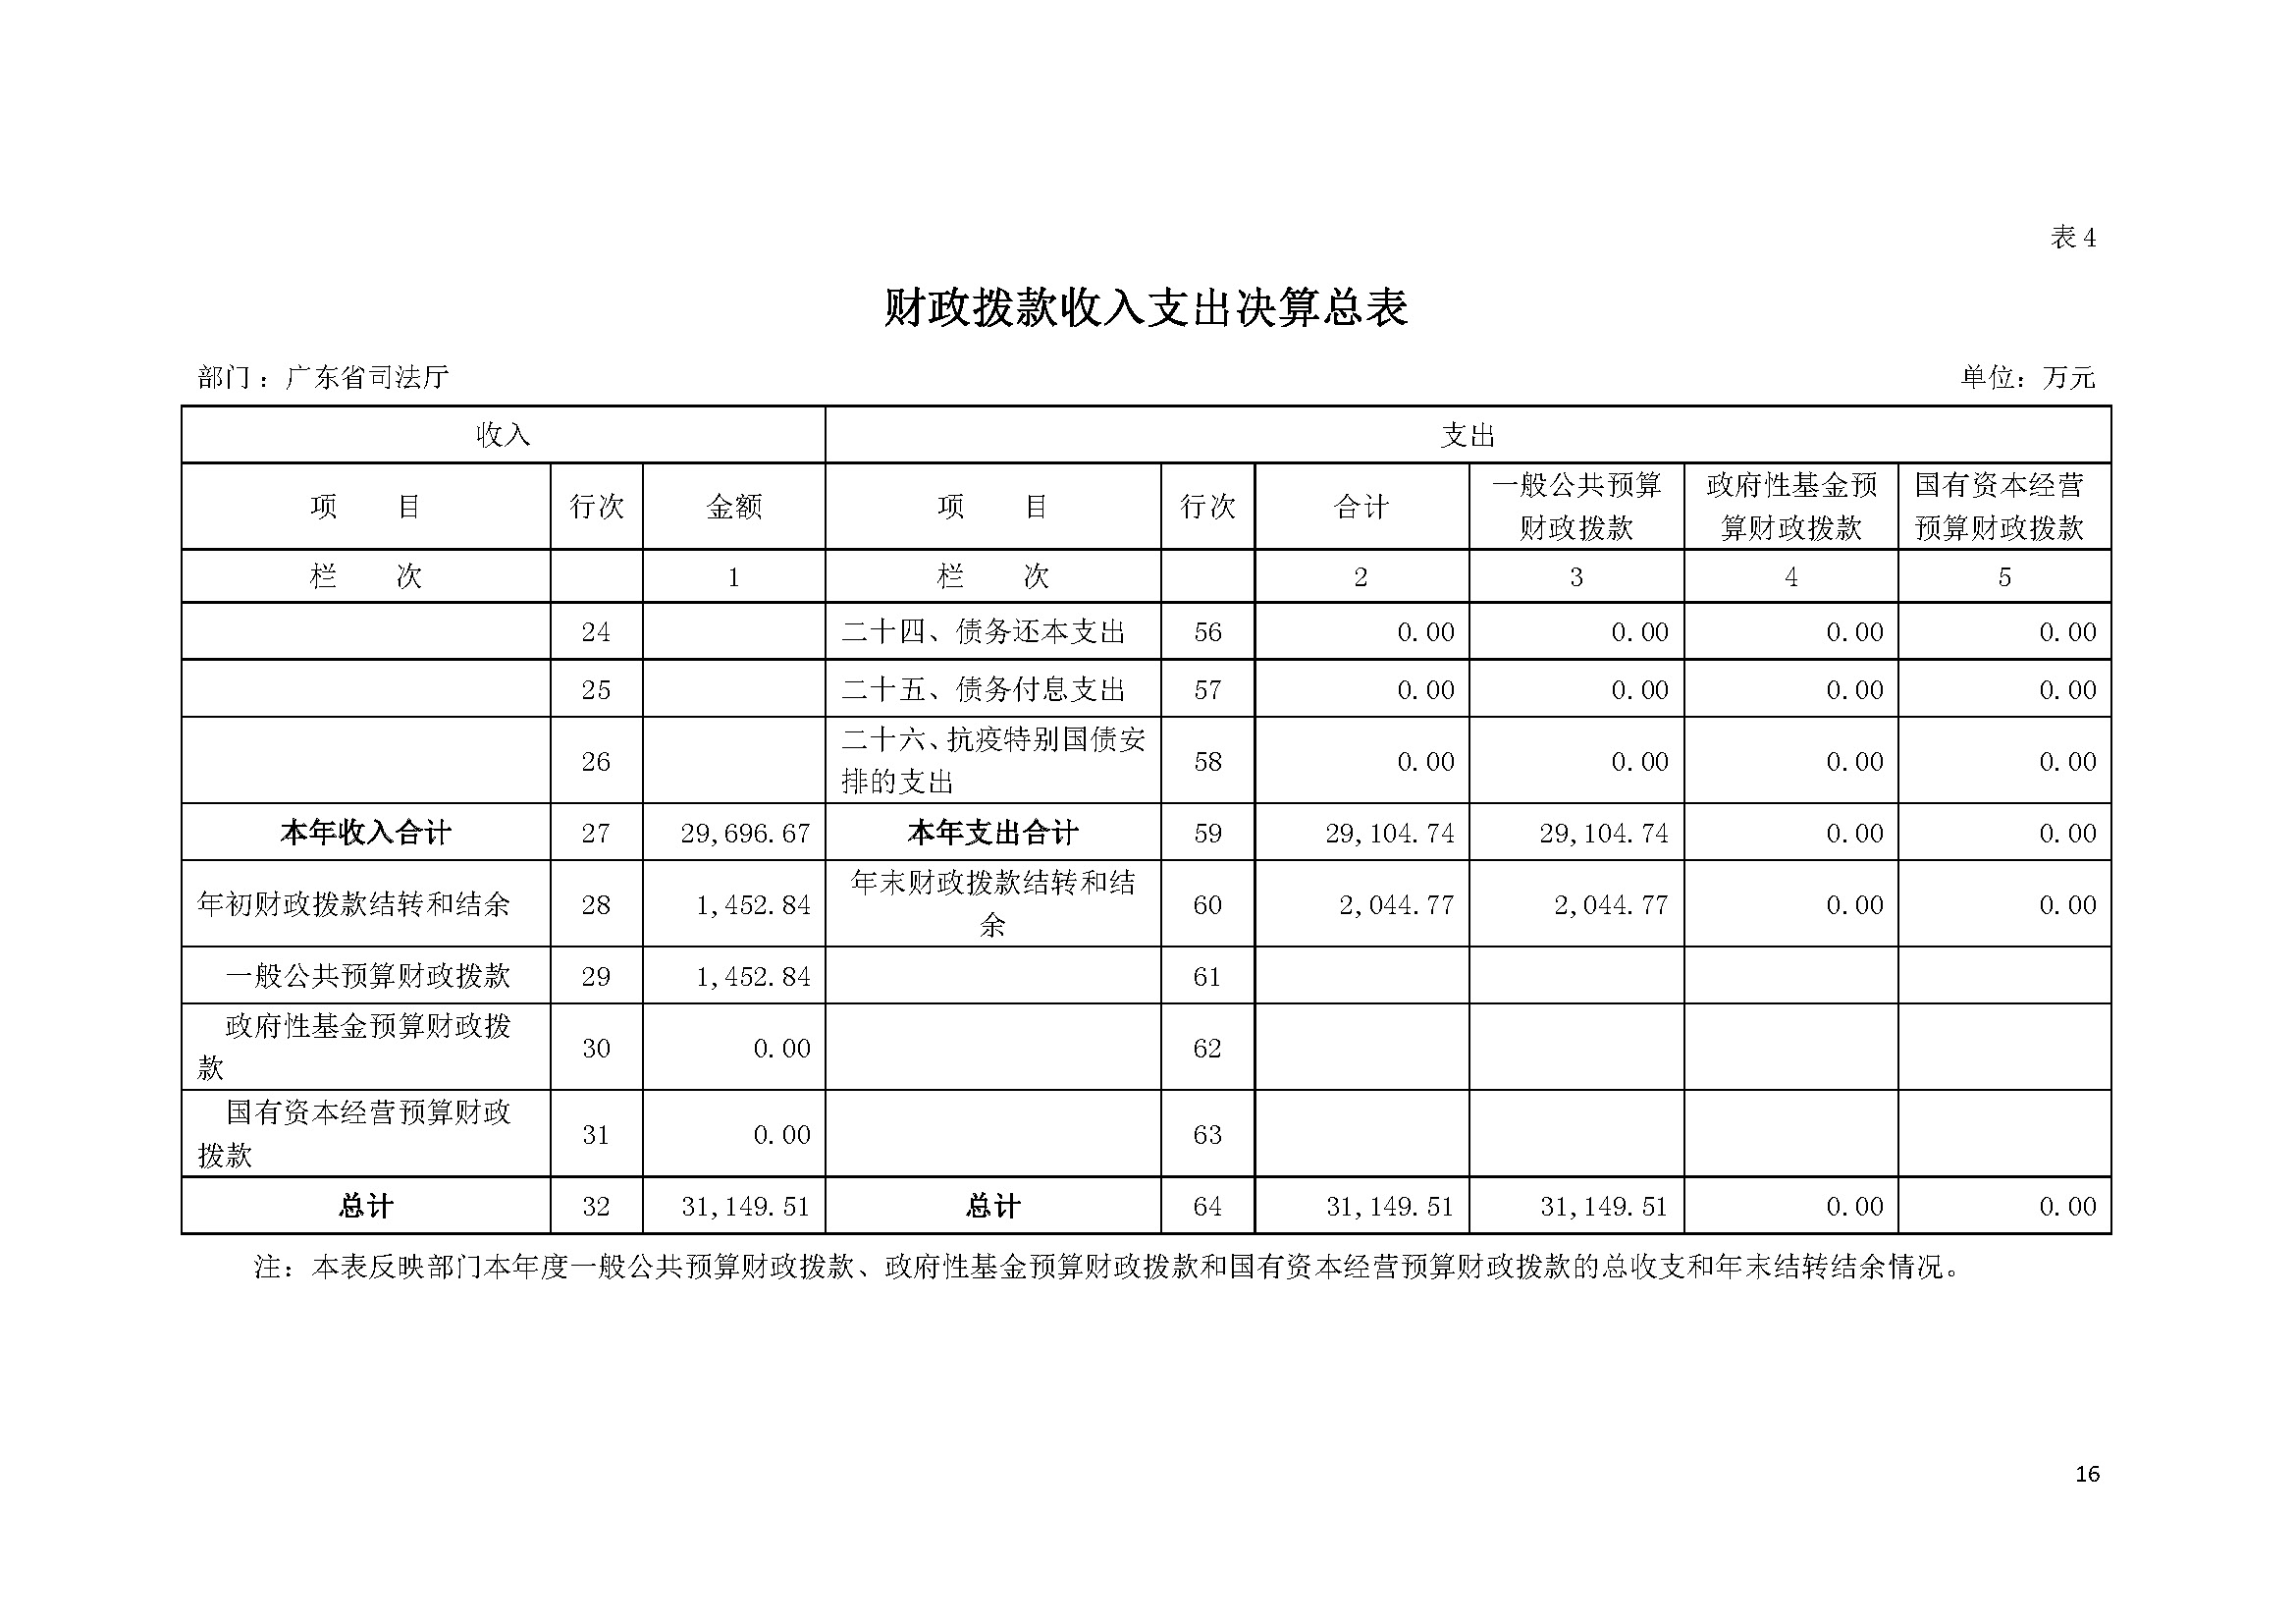 2022年度广东省司法厅部门决算__页面_16.jpg